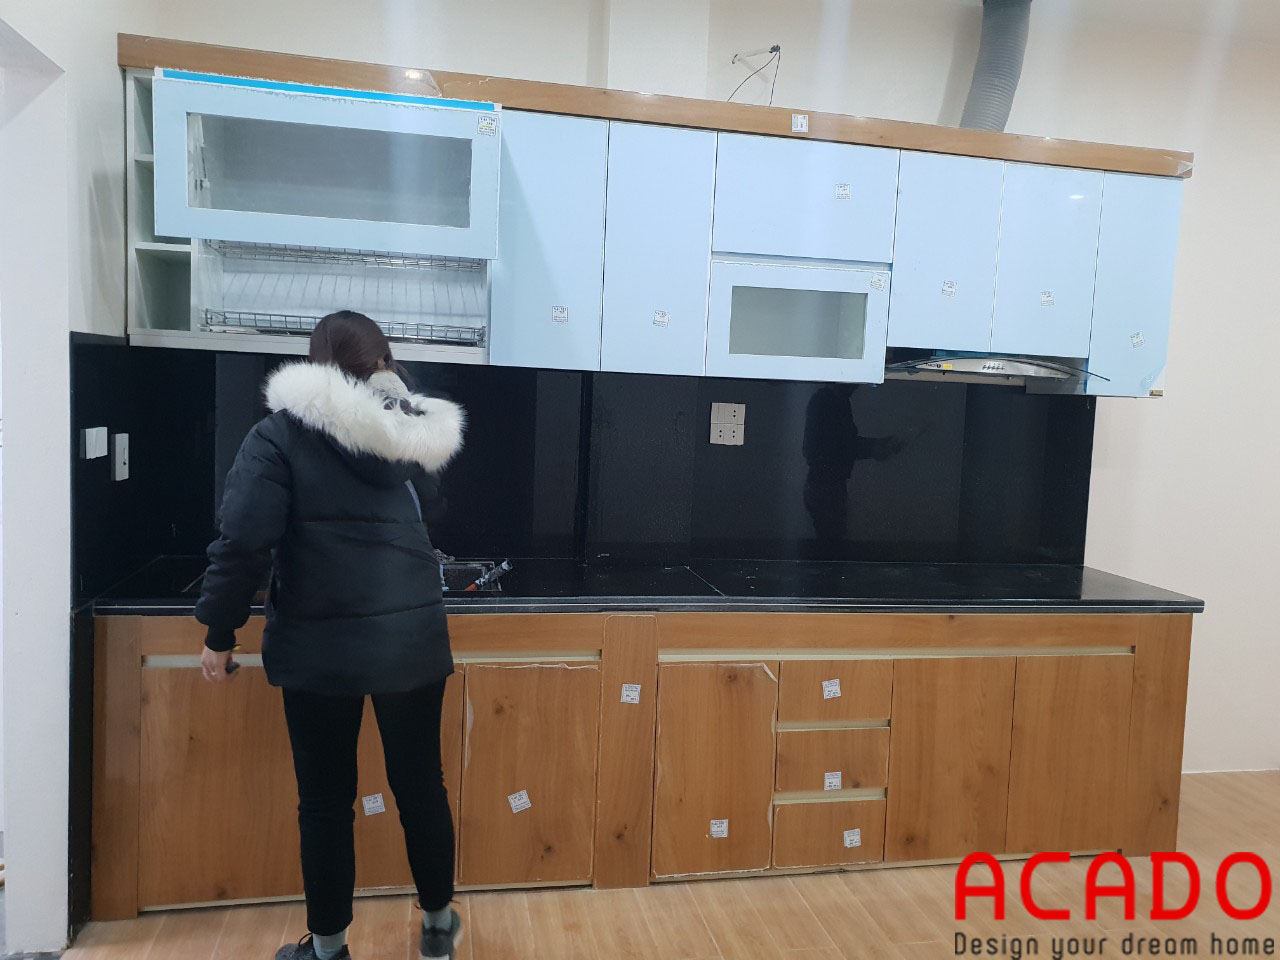 Sau khi hoàn thiện tủ bếp của gia đình chị mai đang được nhân viên ACADO giám sát, kiểm tra lại Trước khi bàn giao cho chủ nhà